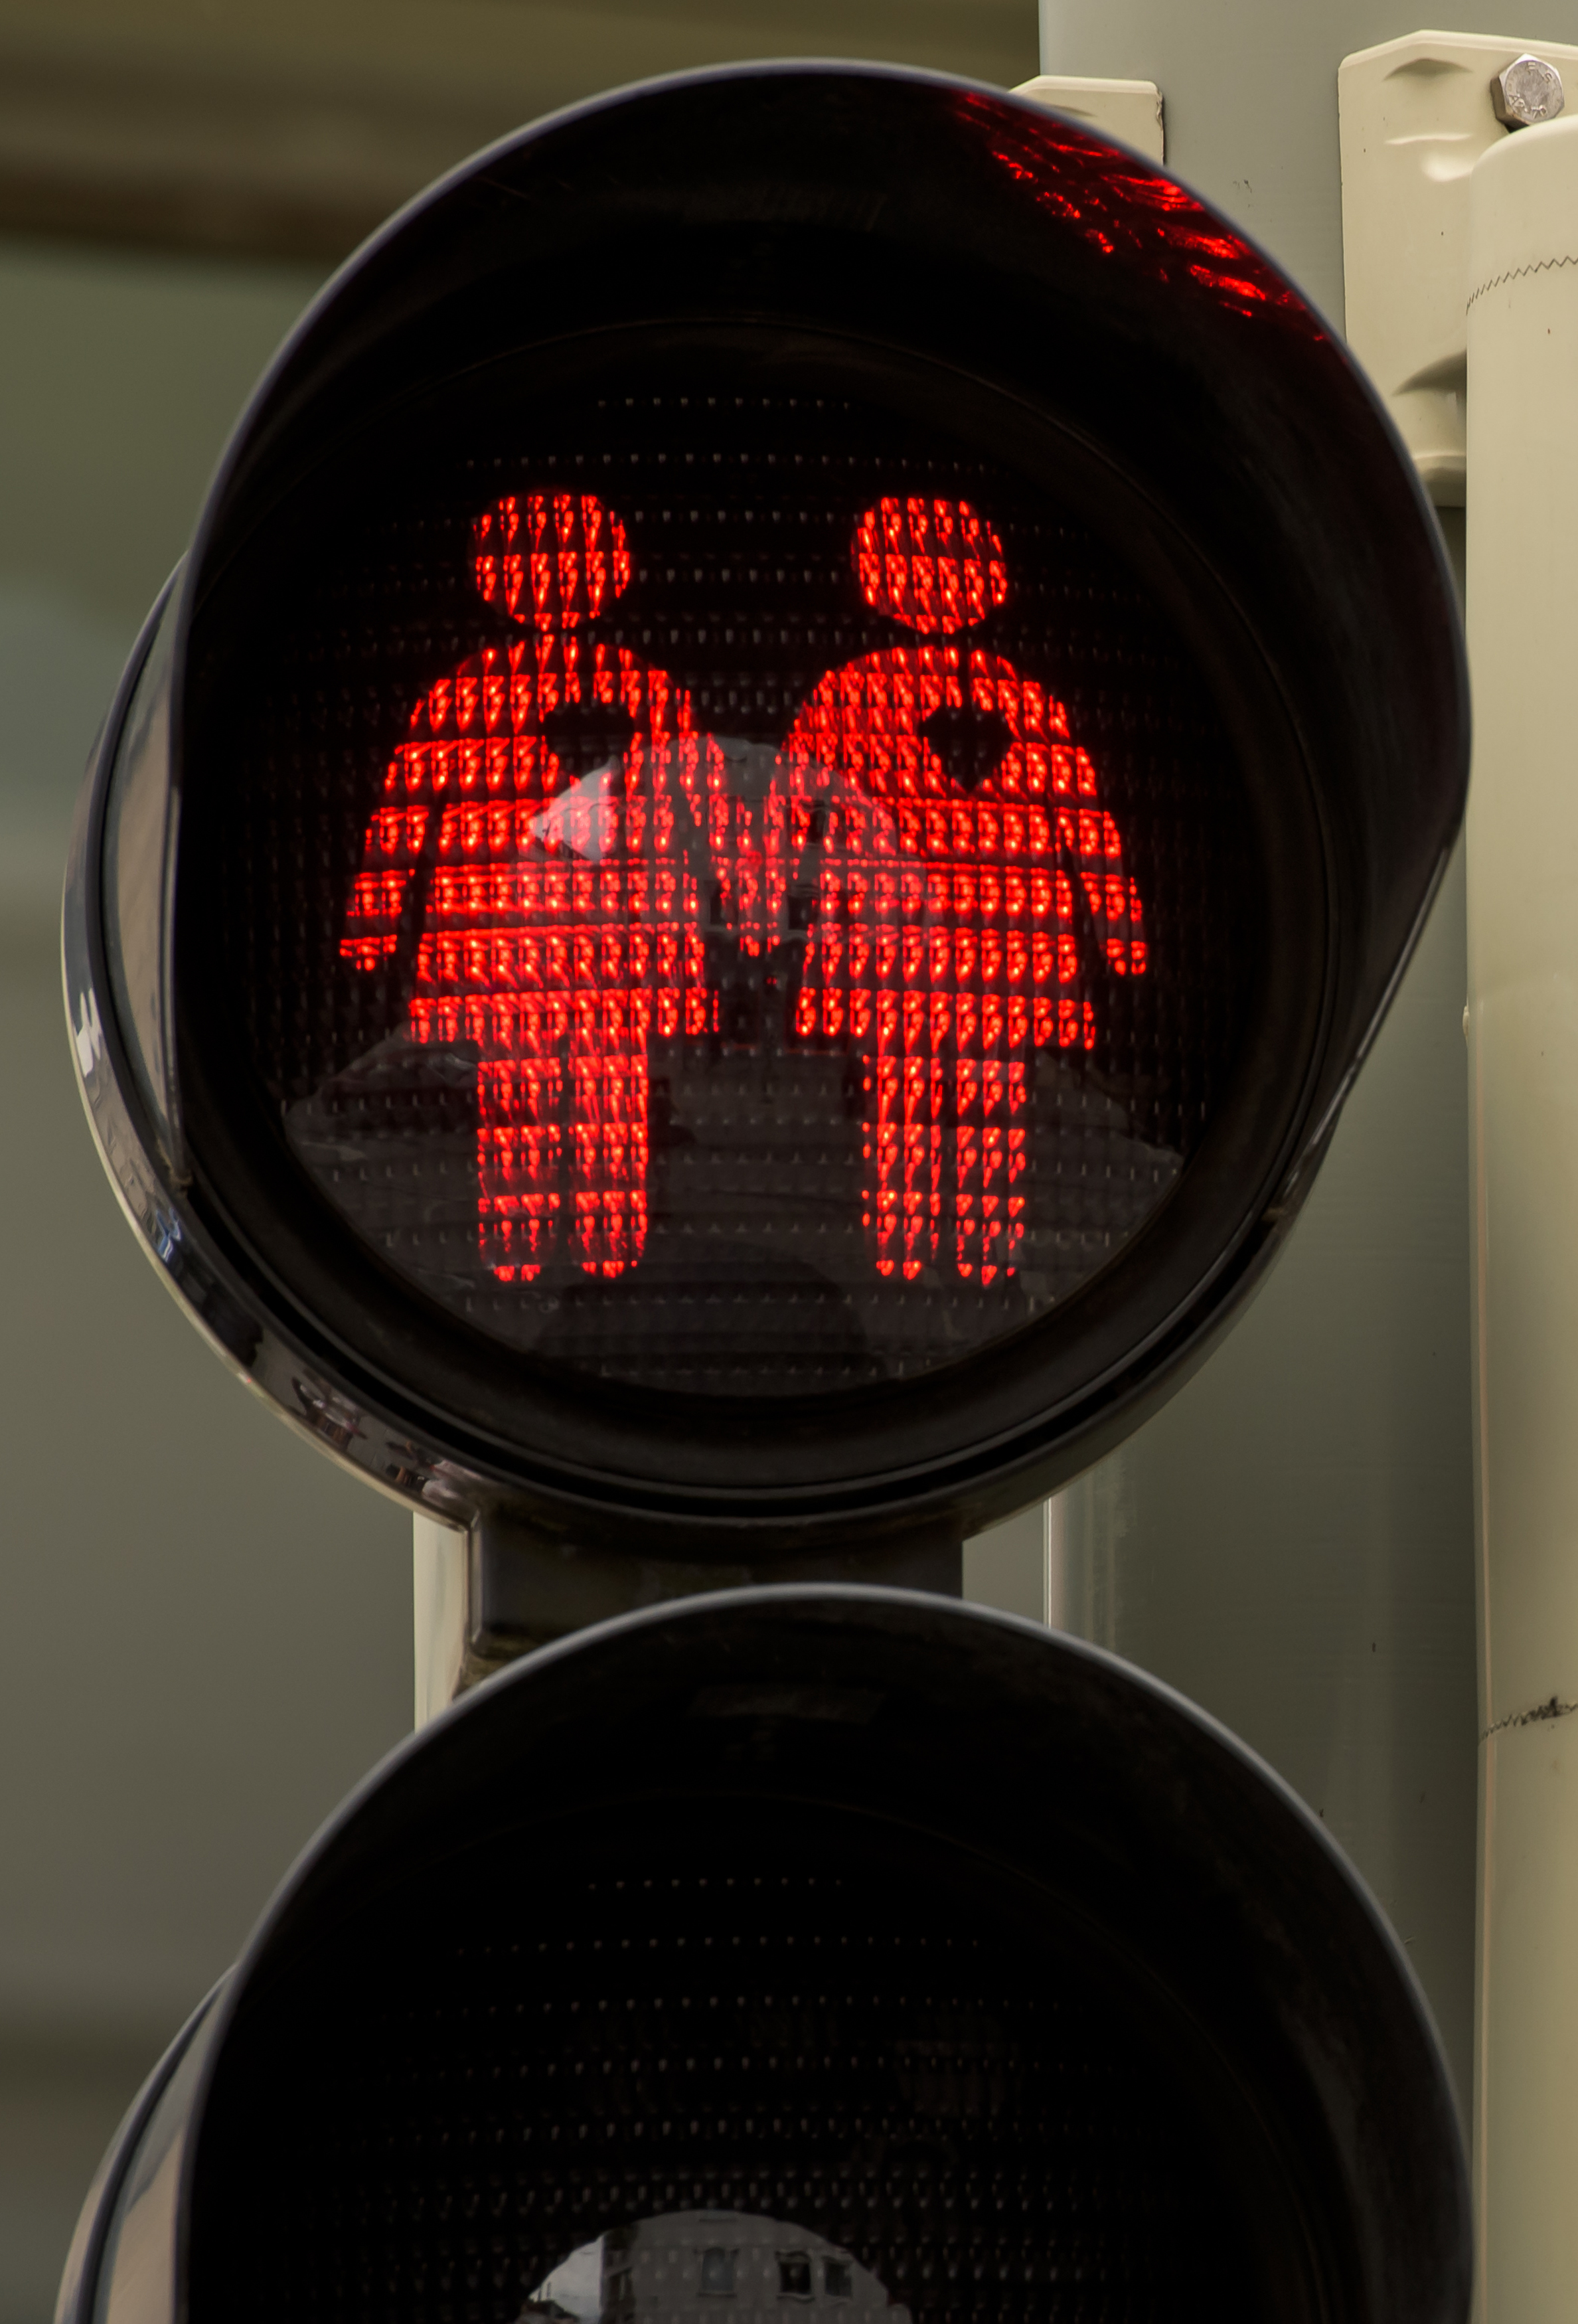 Munich Introduces Homosexual Pedestrian Light Figures